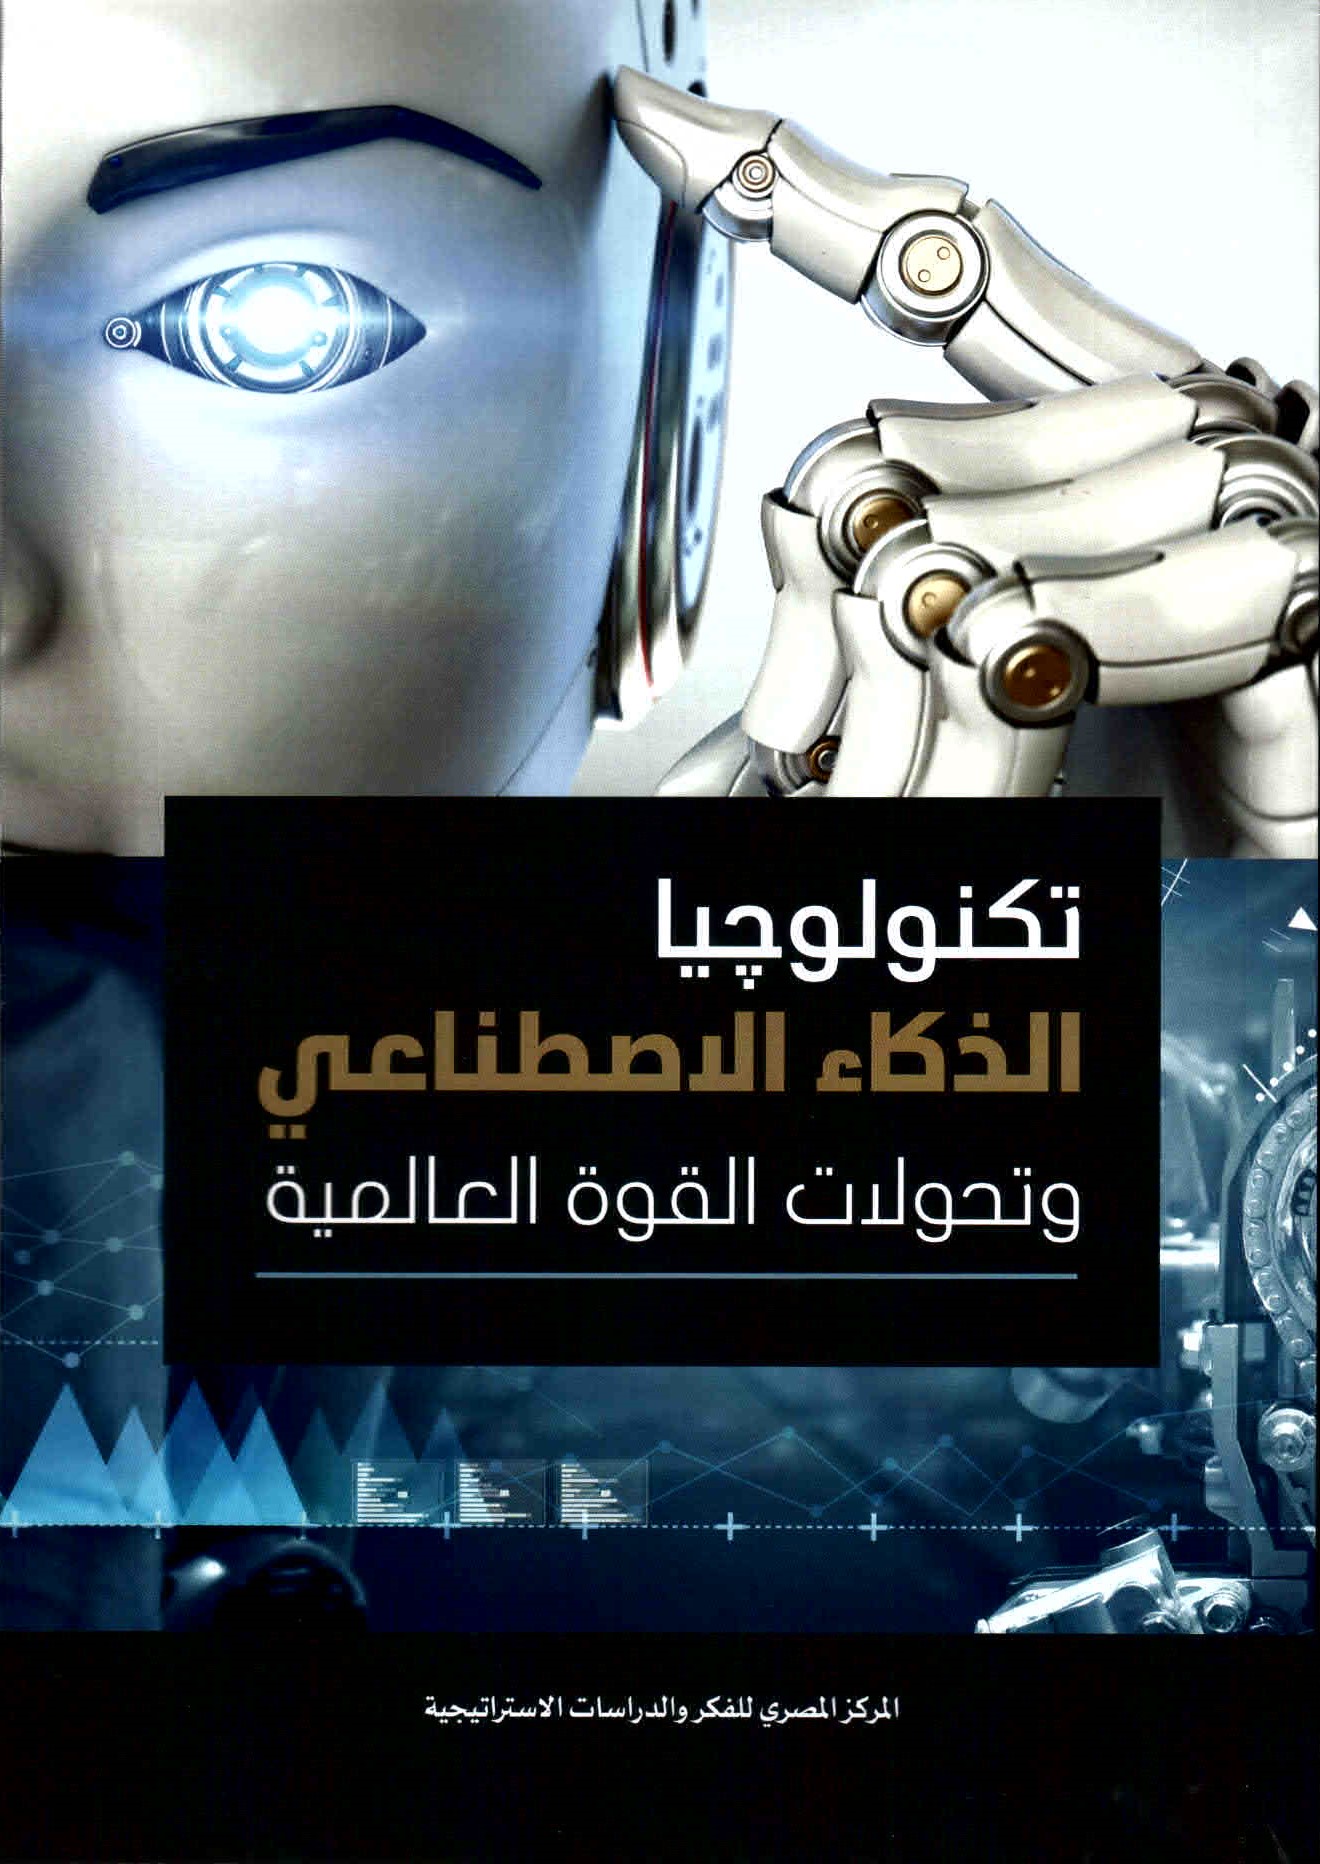 غلاف كتاب تكنولوجيا الذكاء الاصطناعي وتحولات القوة العالمية.